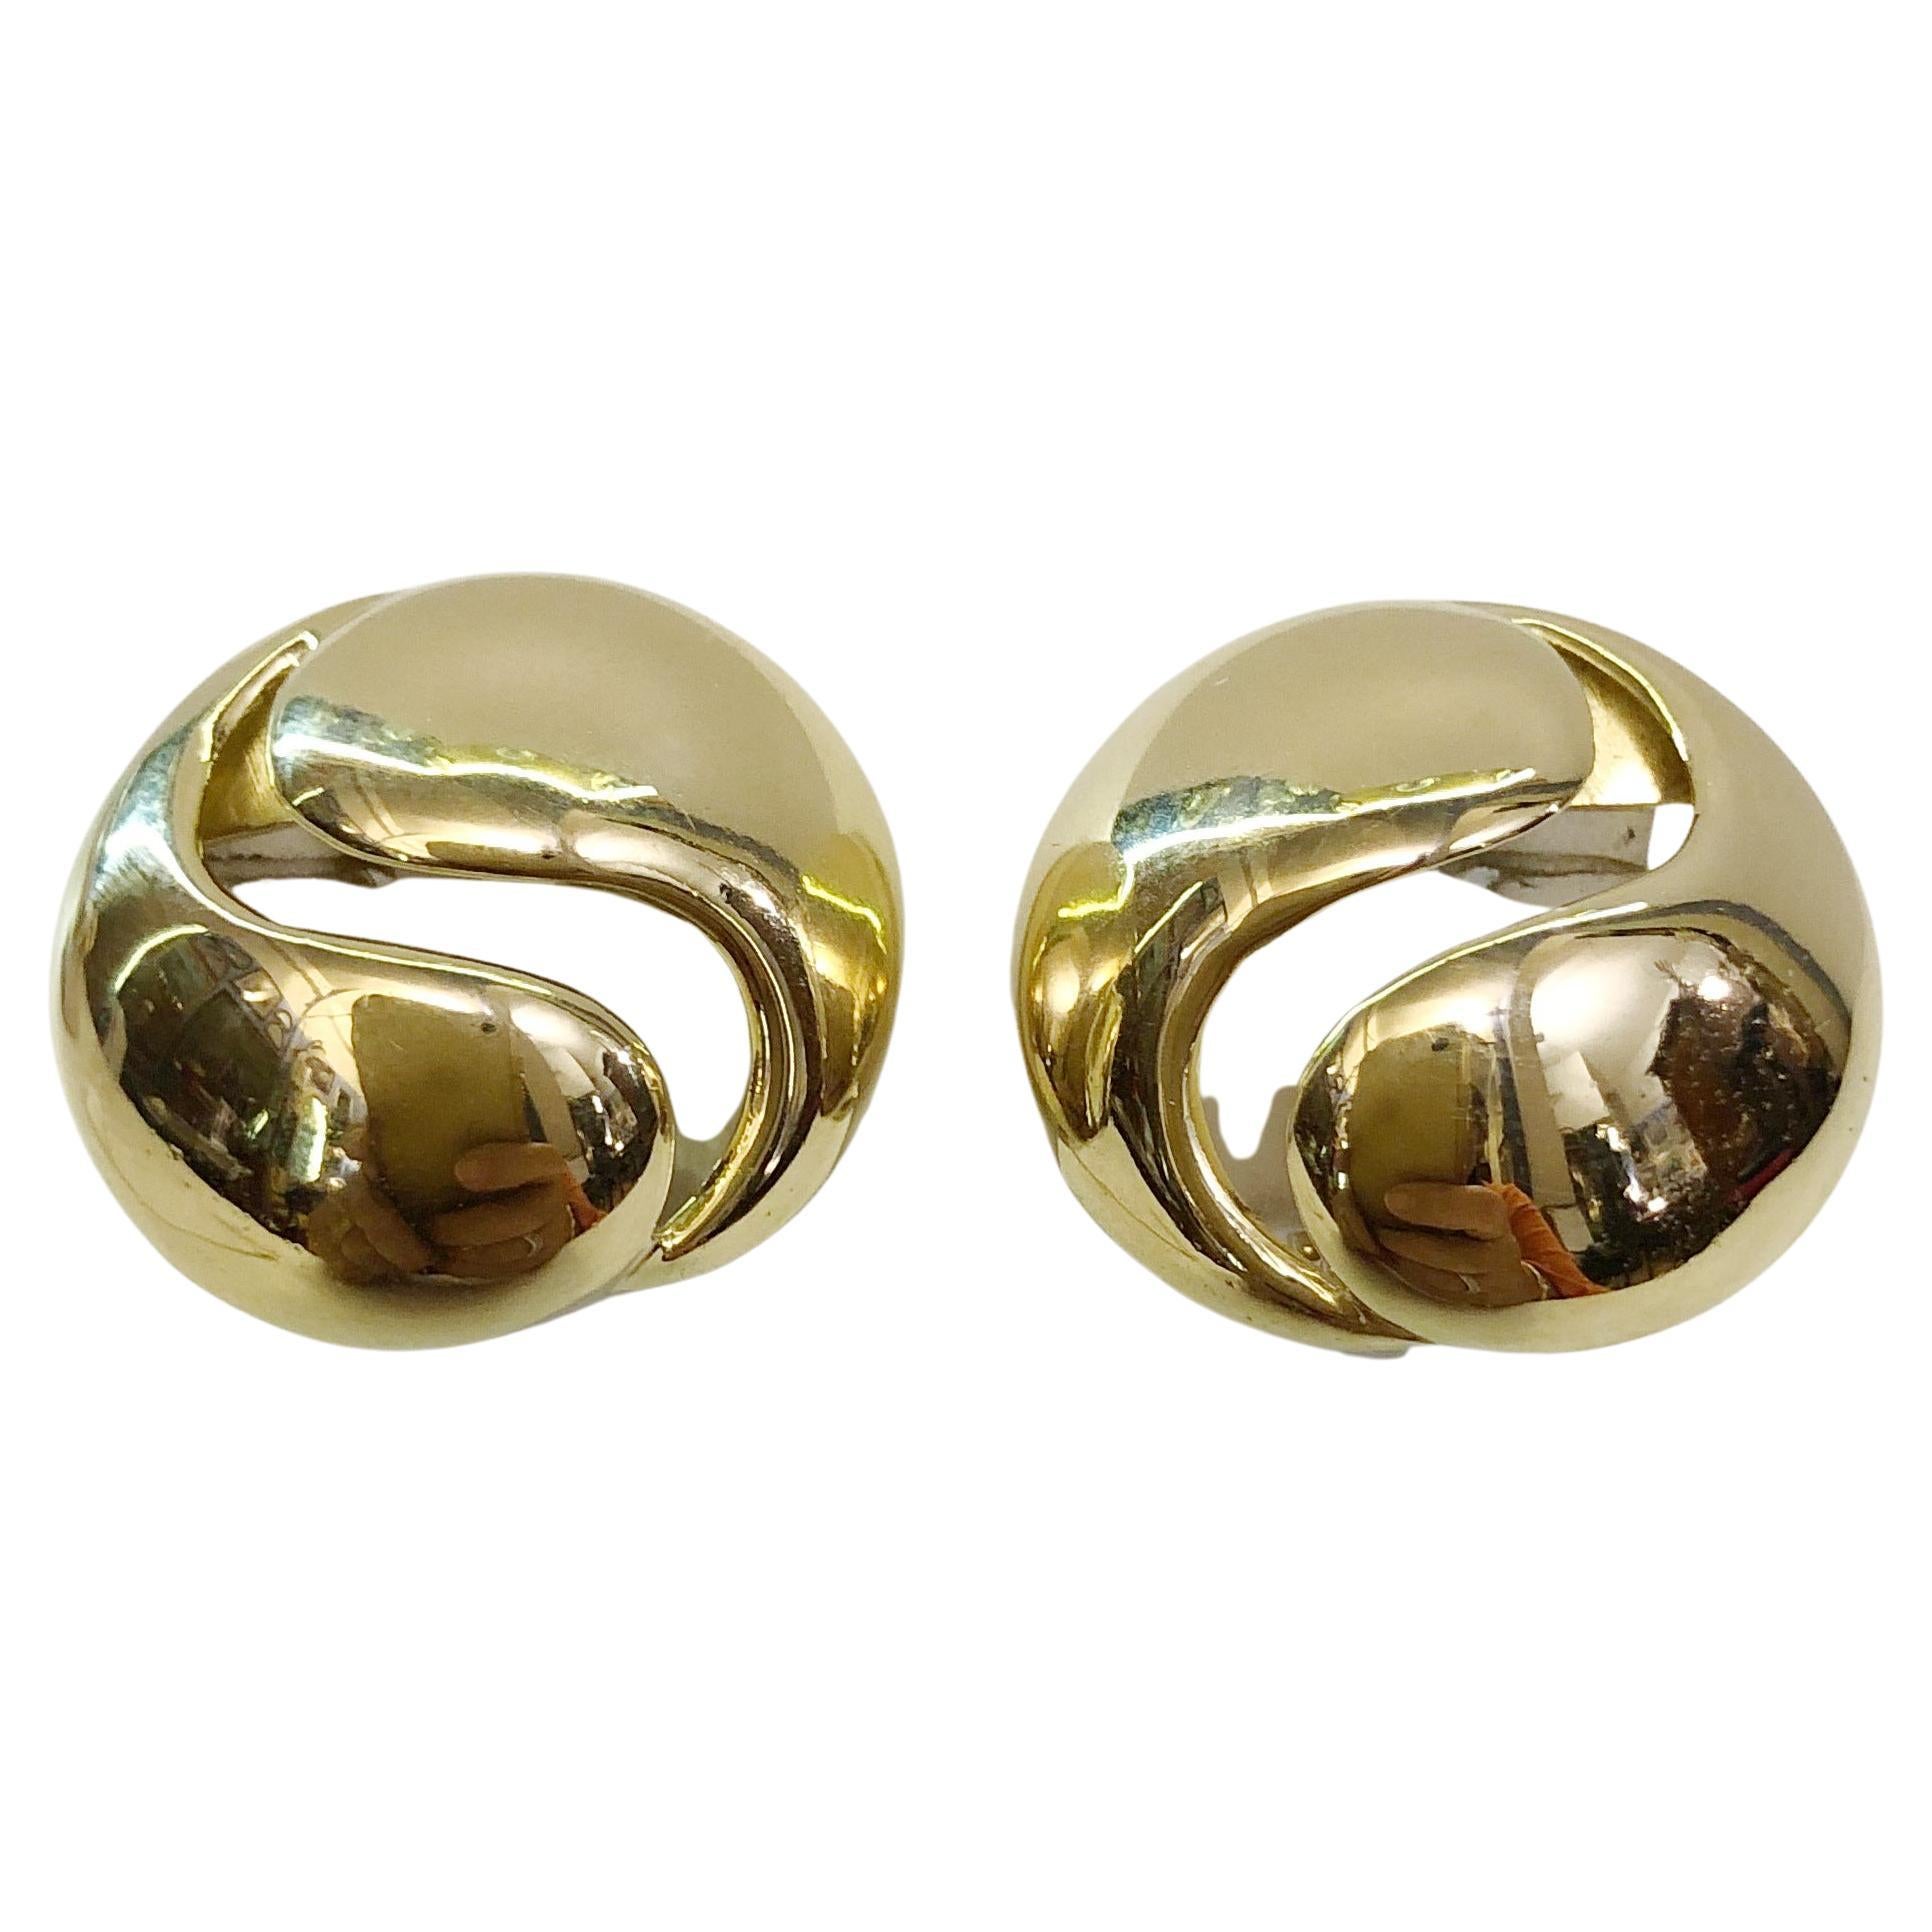 Pair of 18 Karat Gold Earrings